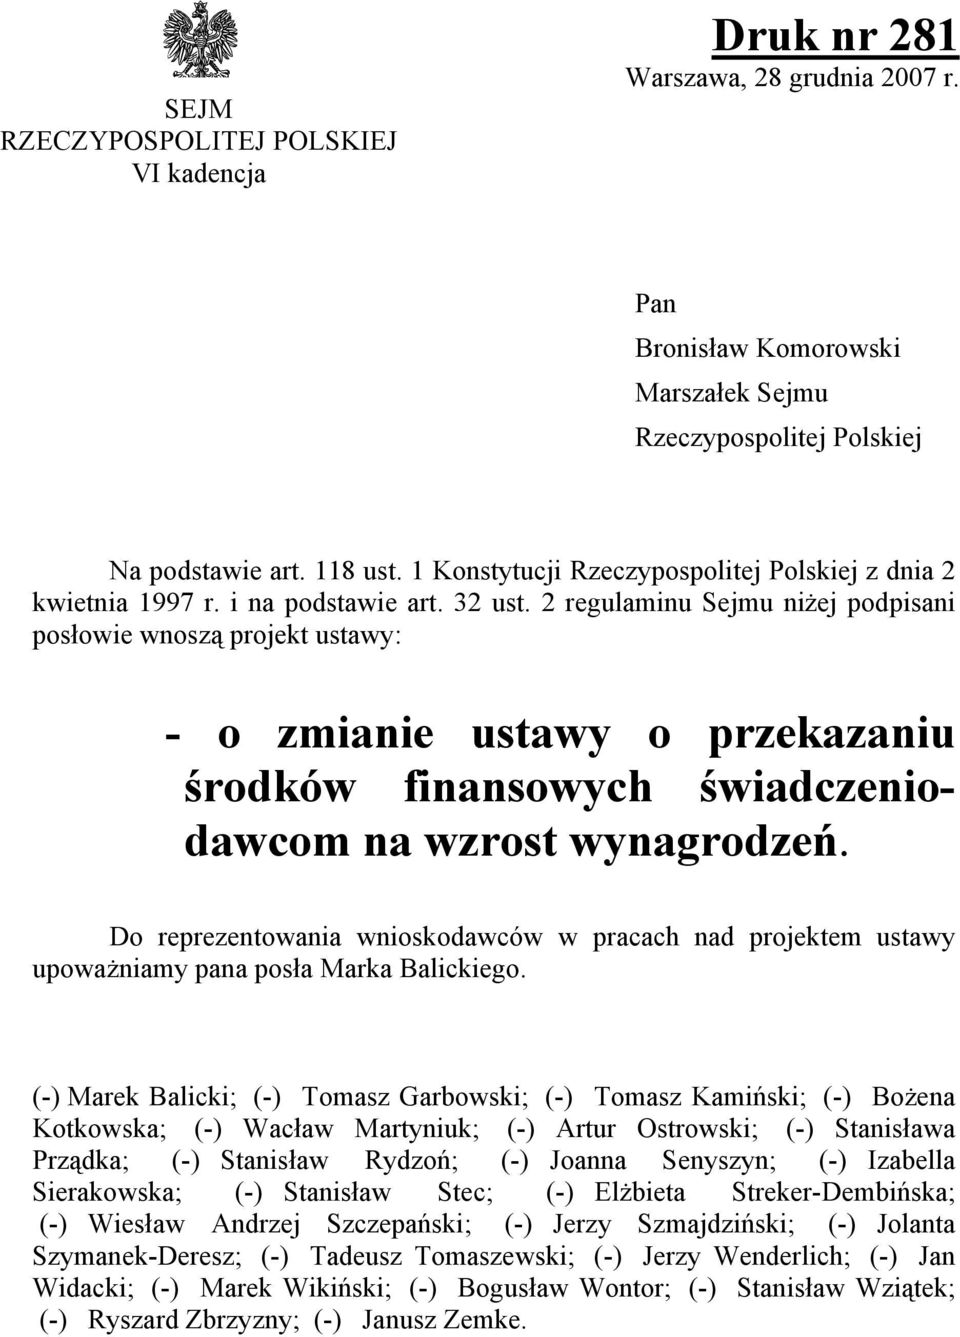 2 regulaminu Sejmu niżej podpisani posłowie wnoszą projekt ustawy: - o zmianie ustawy o przekazaniu środków finansowych świadczeniodawcom na wzrost wynagrodzeń.